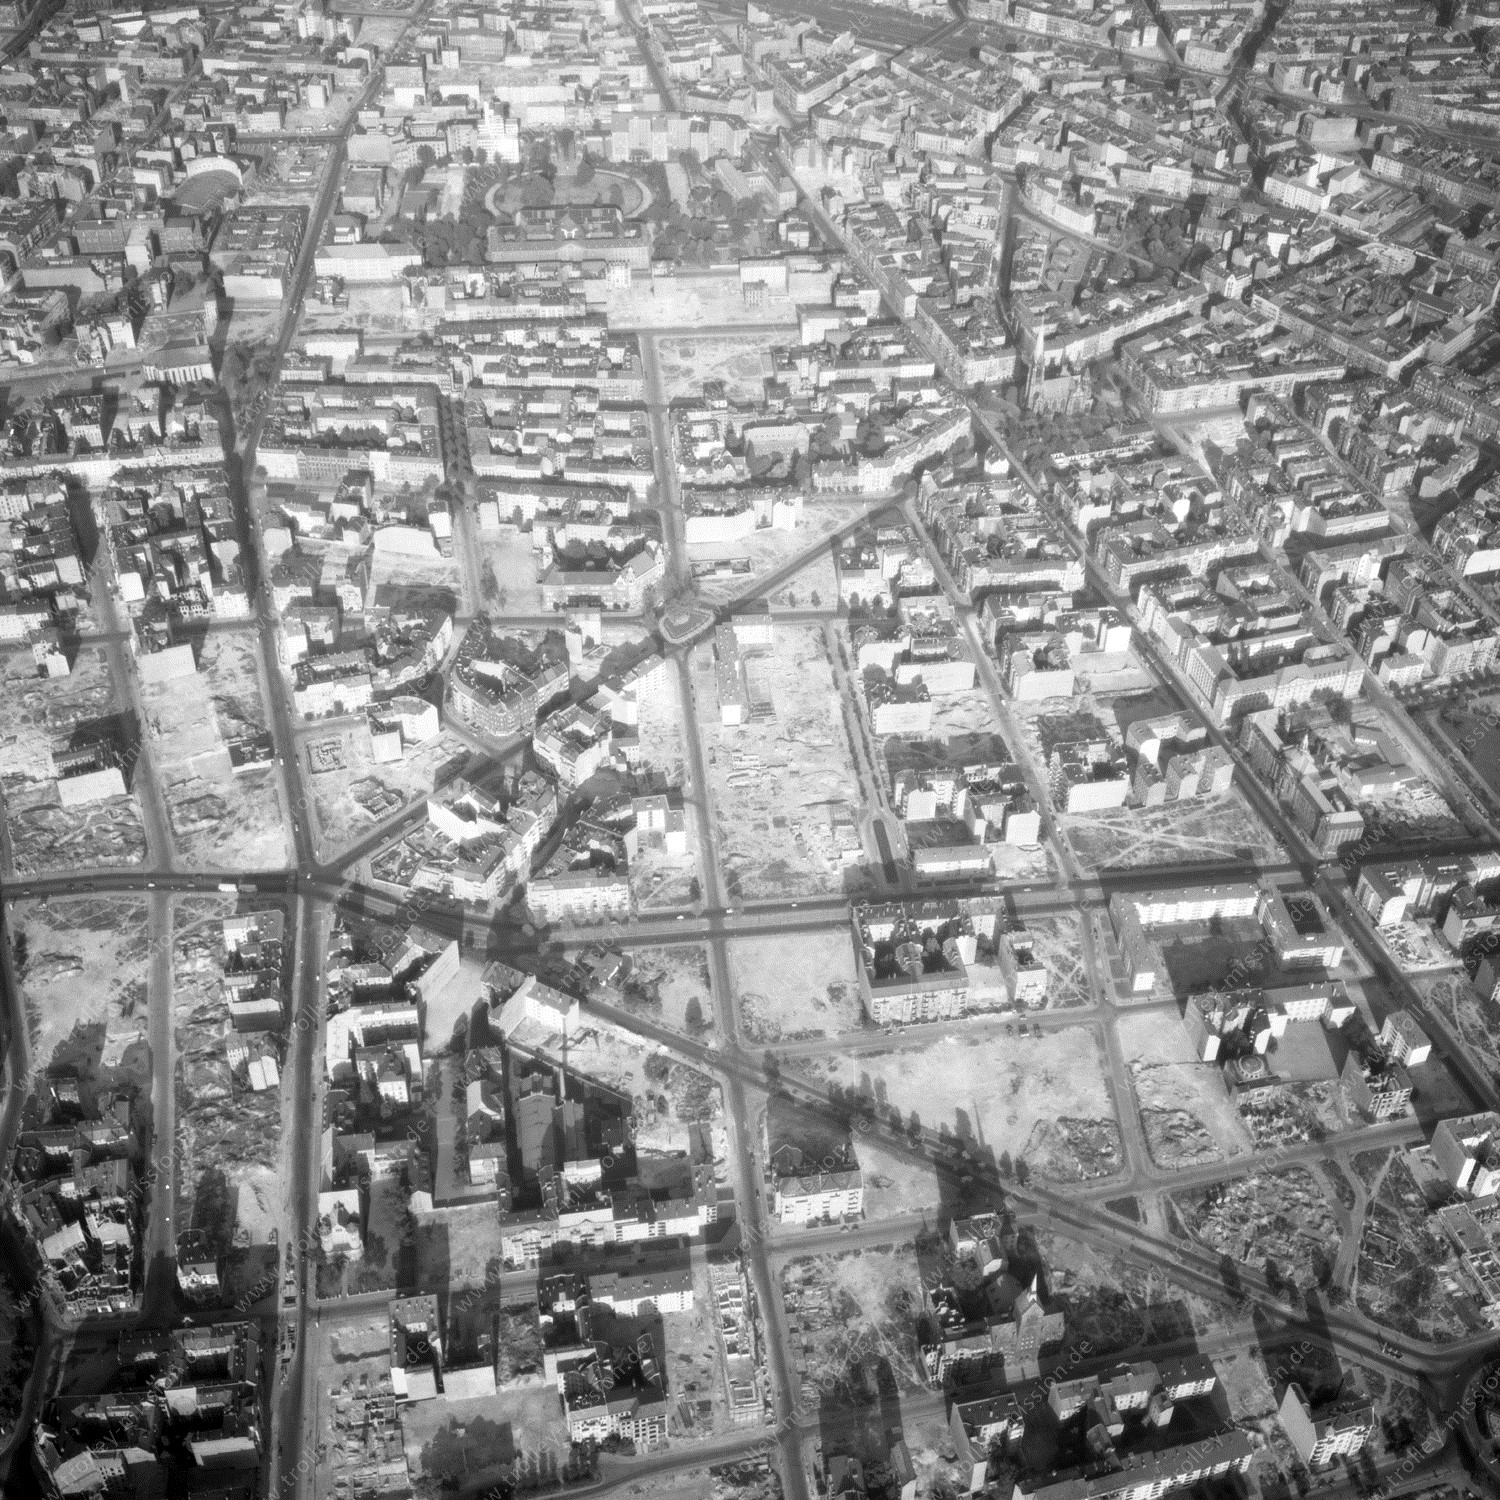 Alte Fotos und Luftbilder von Berlin - Luftbildaufnahme Nr. 05 - Historische Luftaufnahmen von West-Berlin aus dem Jahr 1954 - Flugstrecke Foxtrot